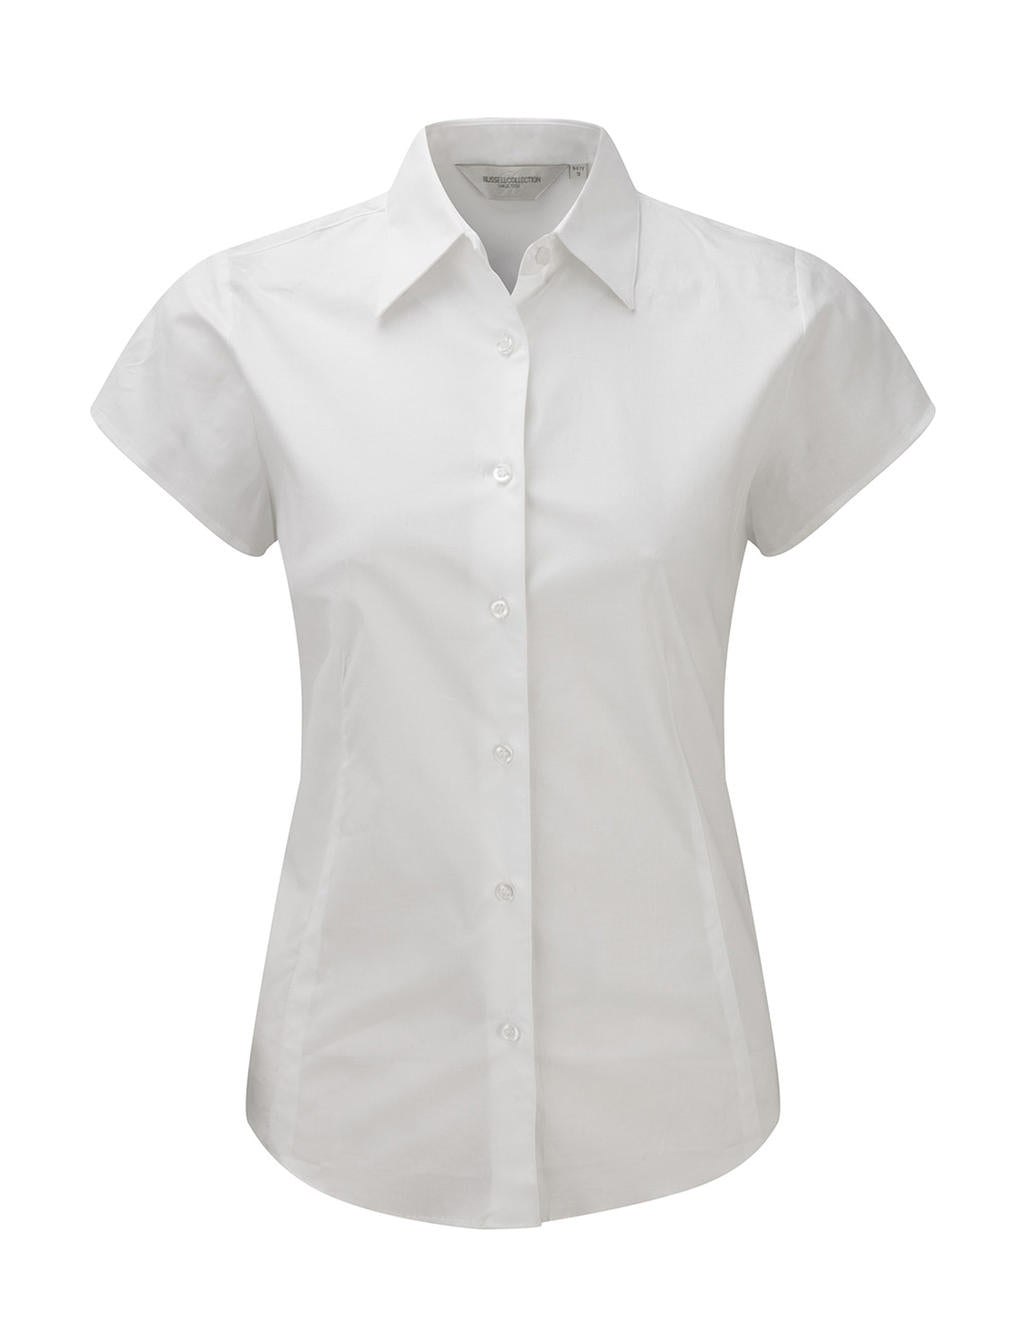 Russel Damen Business Oberteil Shirt Stretch Bluse T-Shirt kurzarm